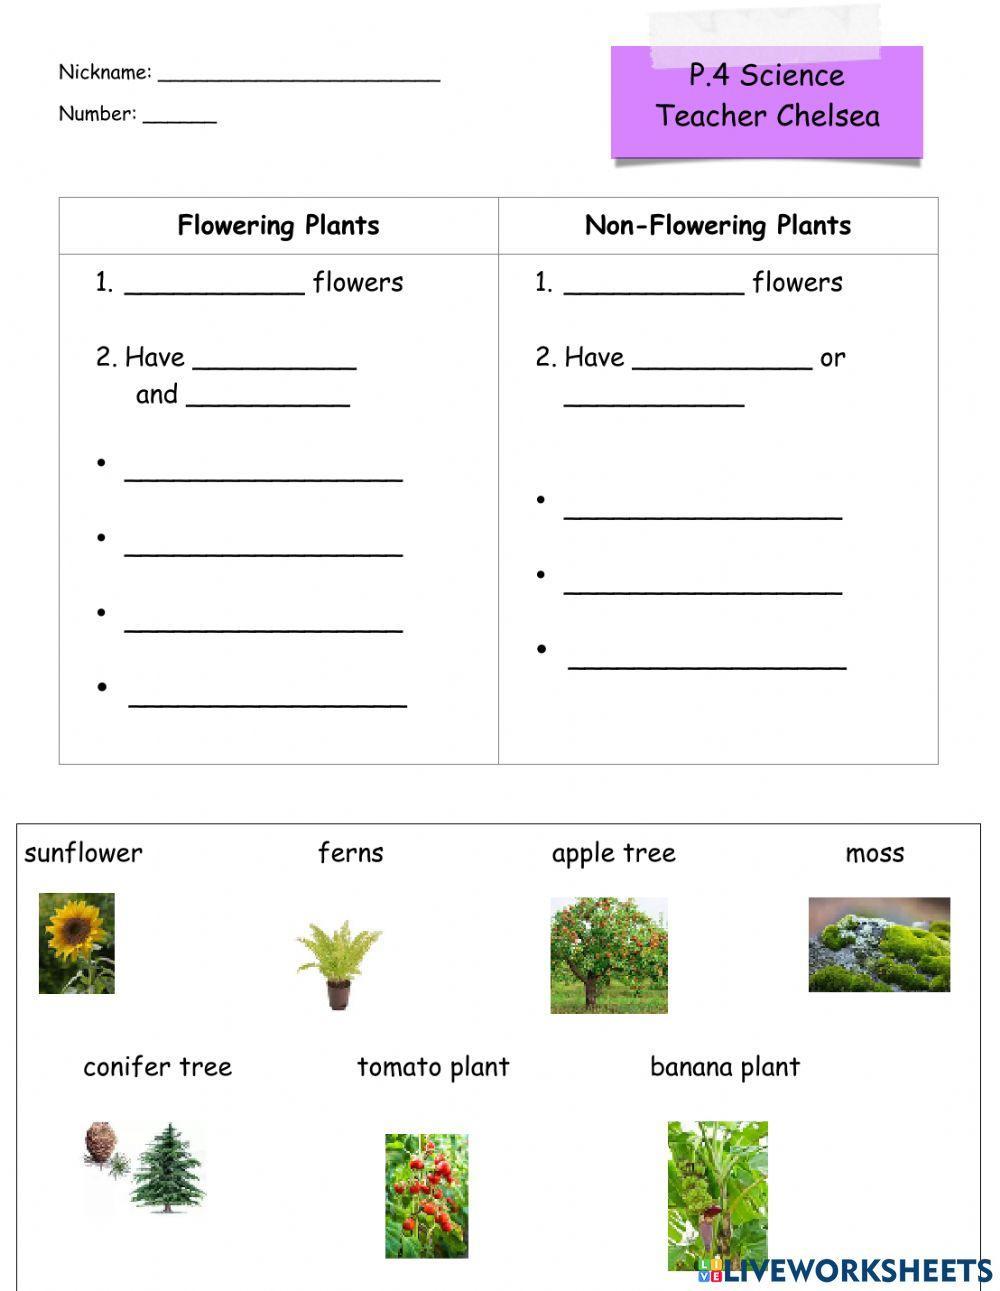 Flowering vs. Non-flowering plants